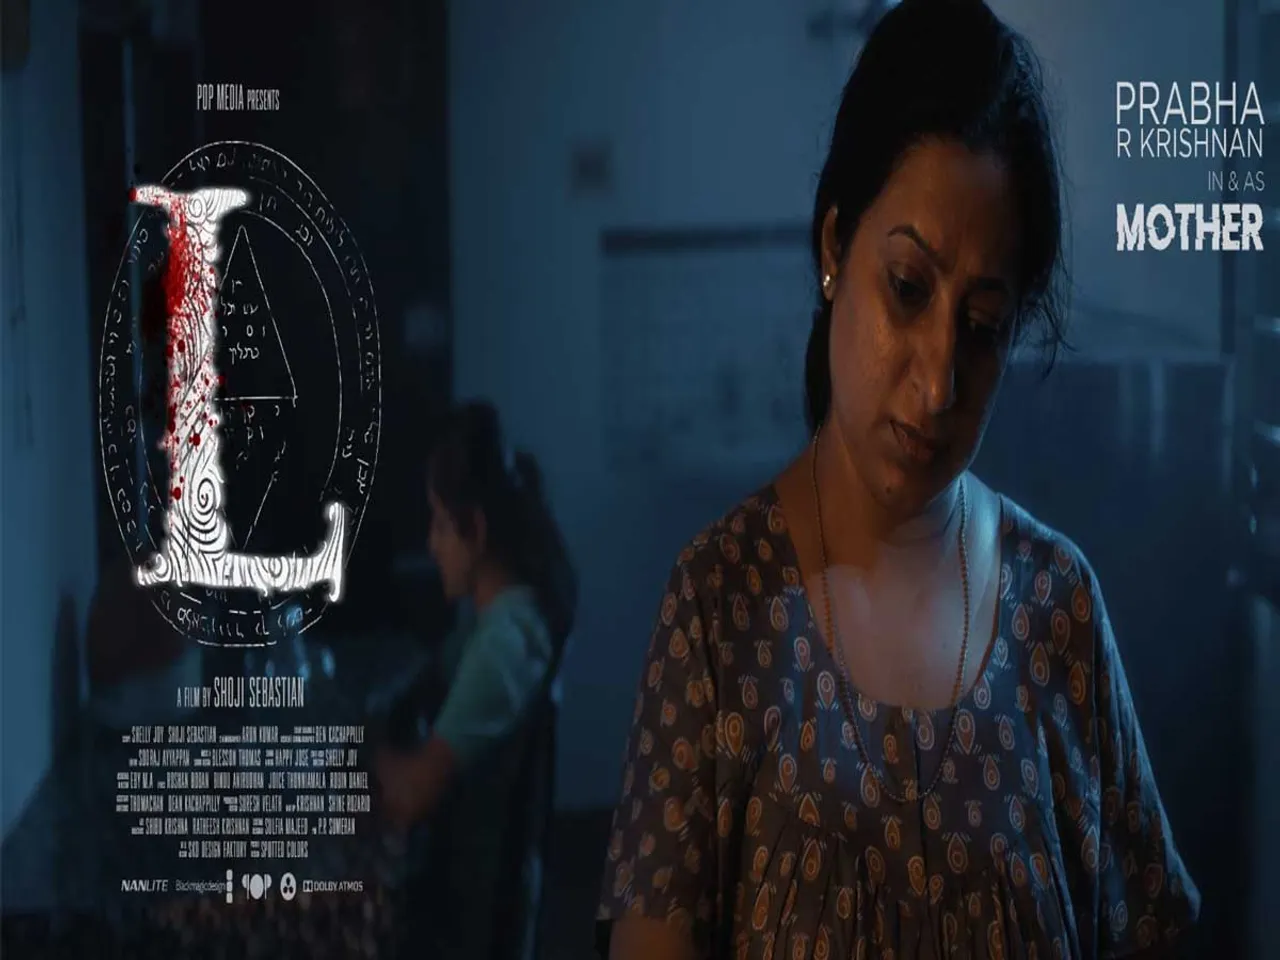 ഷോജി സെബാസ്റ്റ്യന്‍ സംവിധാനം ചെയ്യുന്ന ത്രില്ലർ ചിത്രം 'എല്‍' നാളെ  തിയേറ്ററുകളിലെത്തും